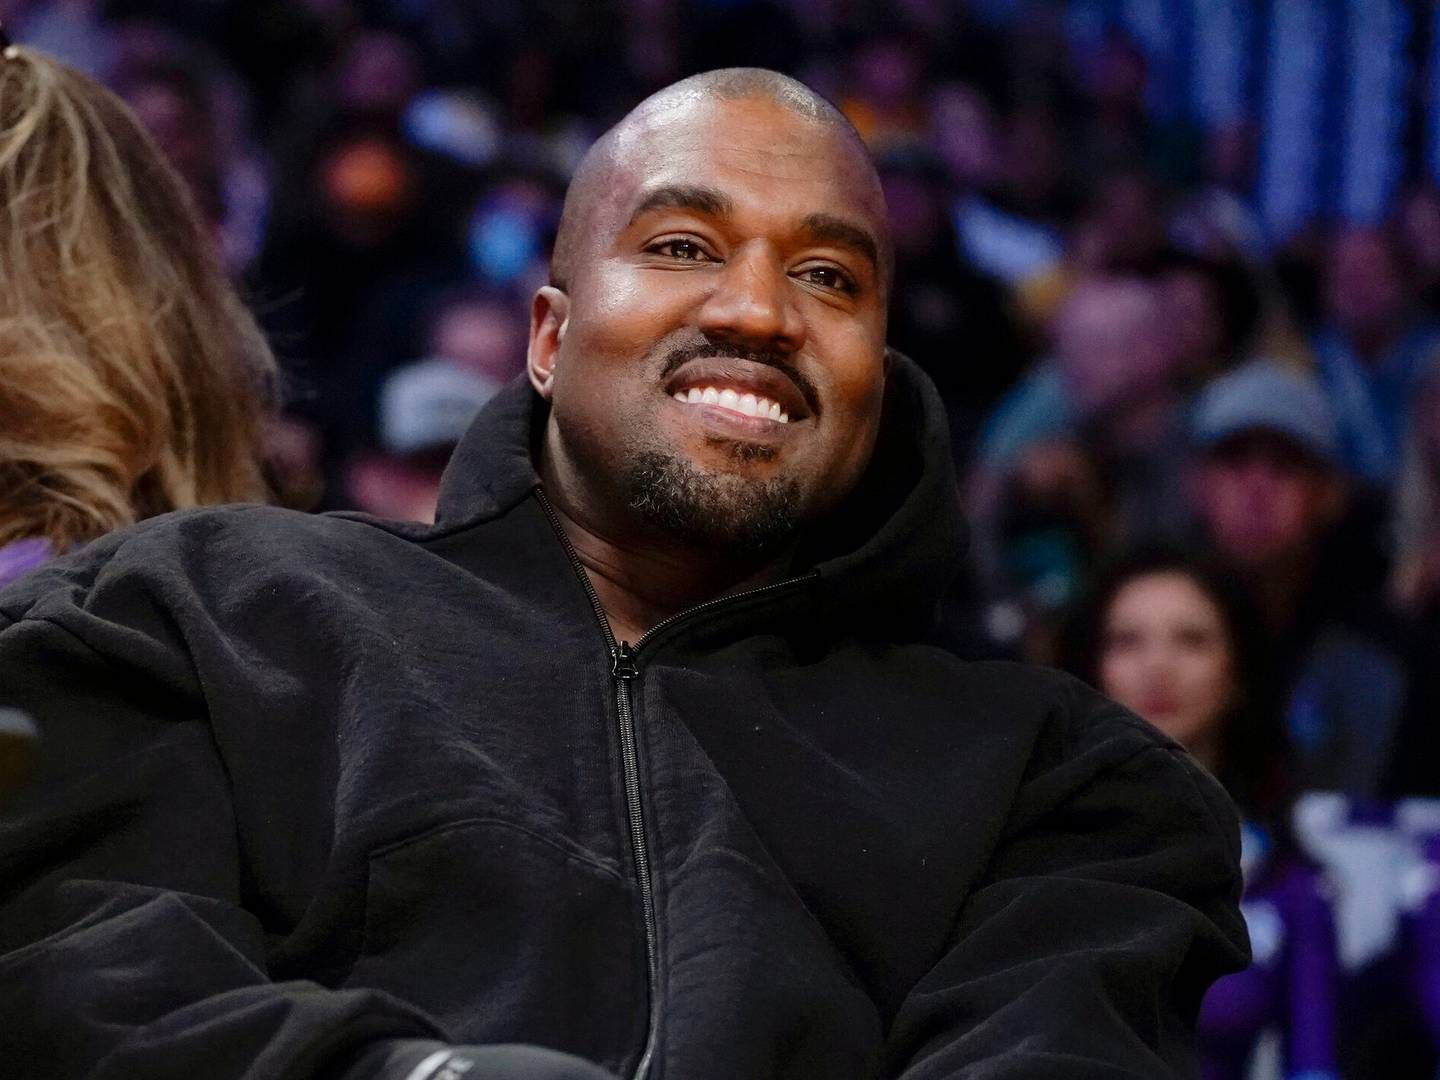 Kanye West gav på Twitter udtryk for antisemitiske holdninger, hvilket fik Adidas til at droppe samarbejdet med ham. | Foto: Ashley Landis/AP/Ritzau Scanpix